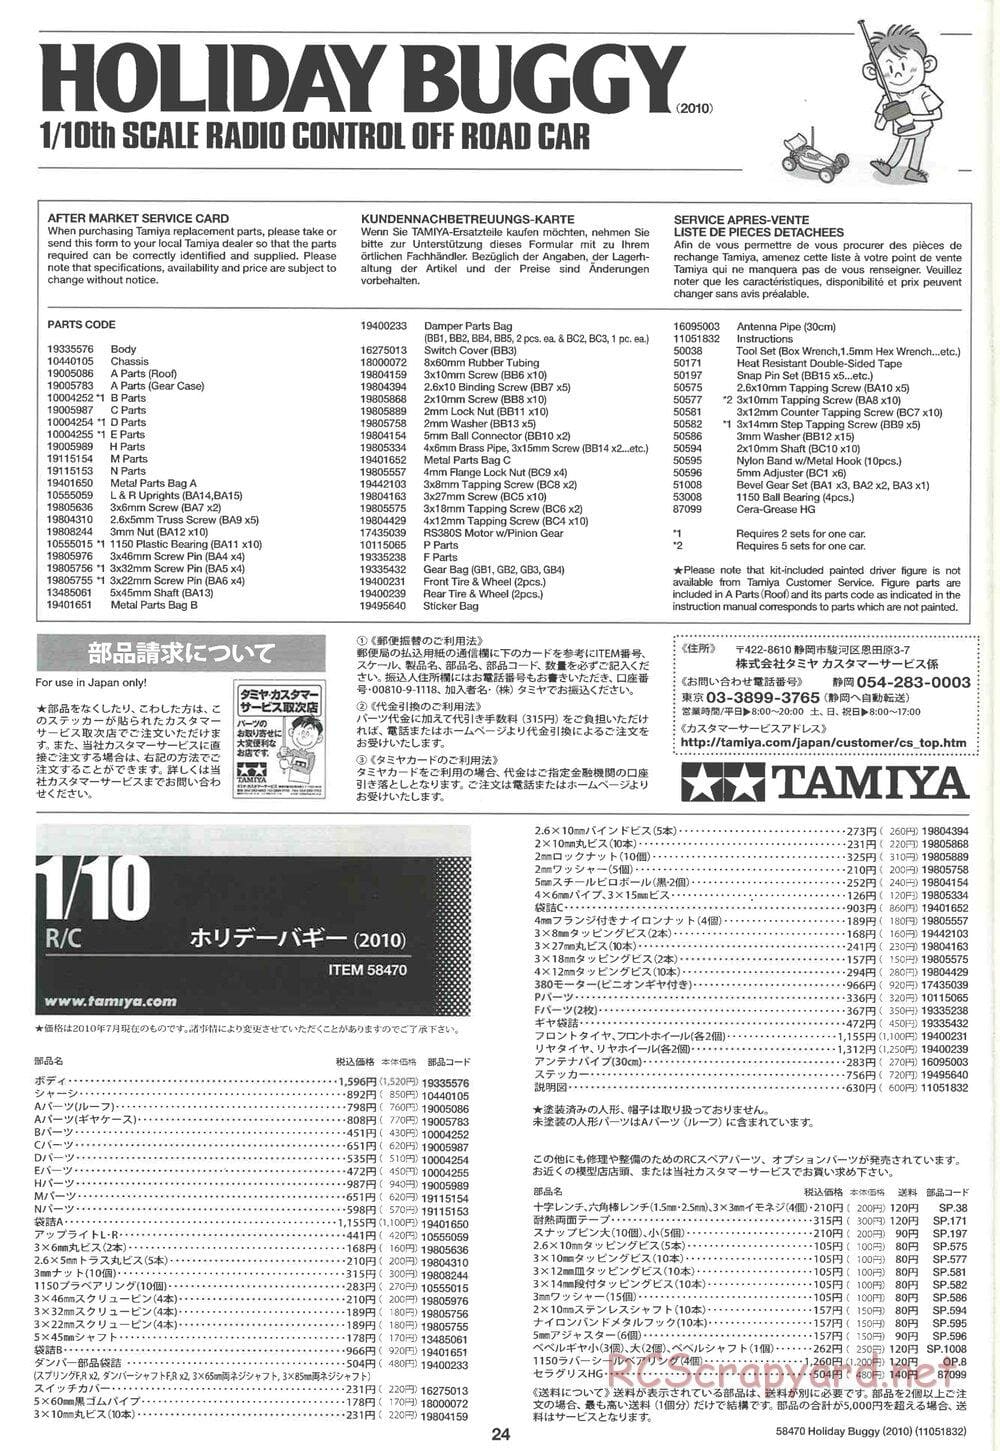 Tamiya - Holiday Buggy 2010 Chassis - Manual - Page 24